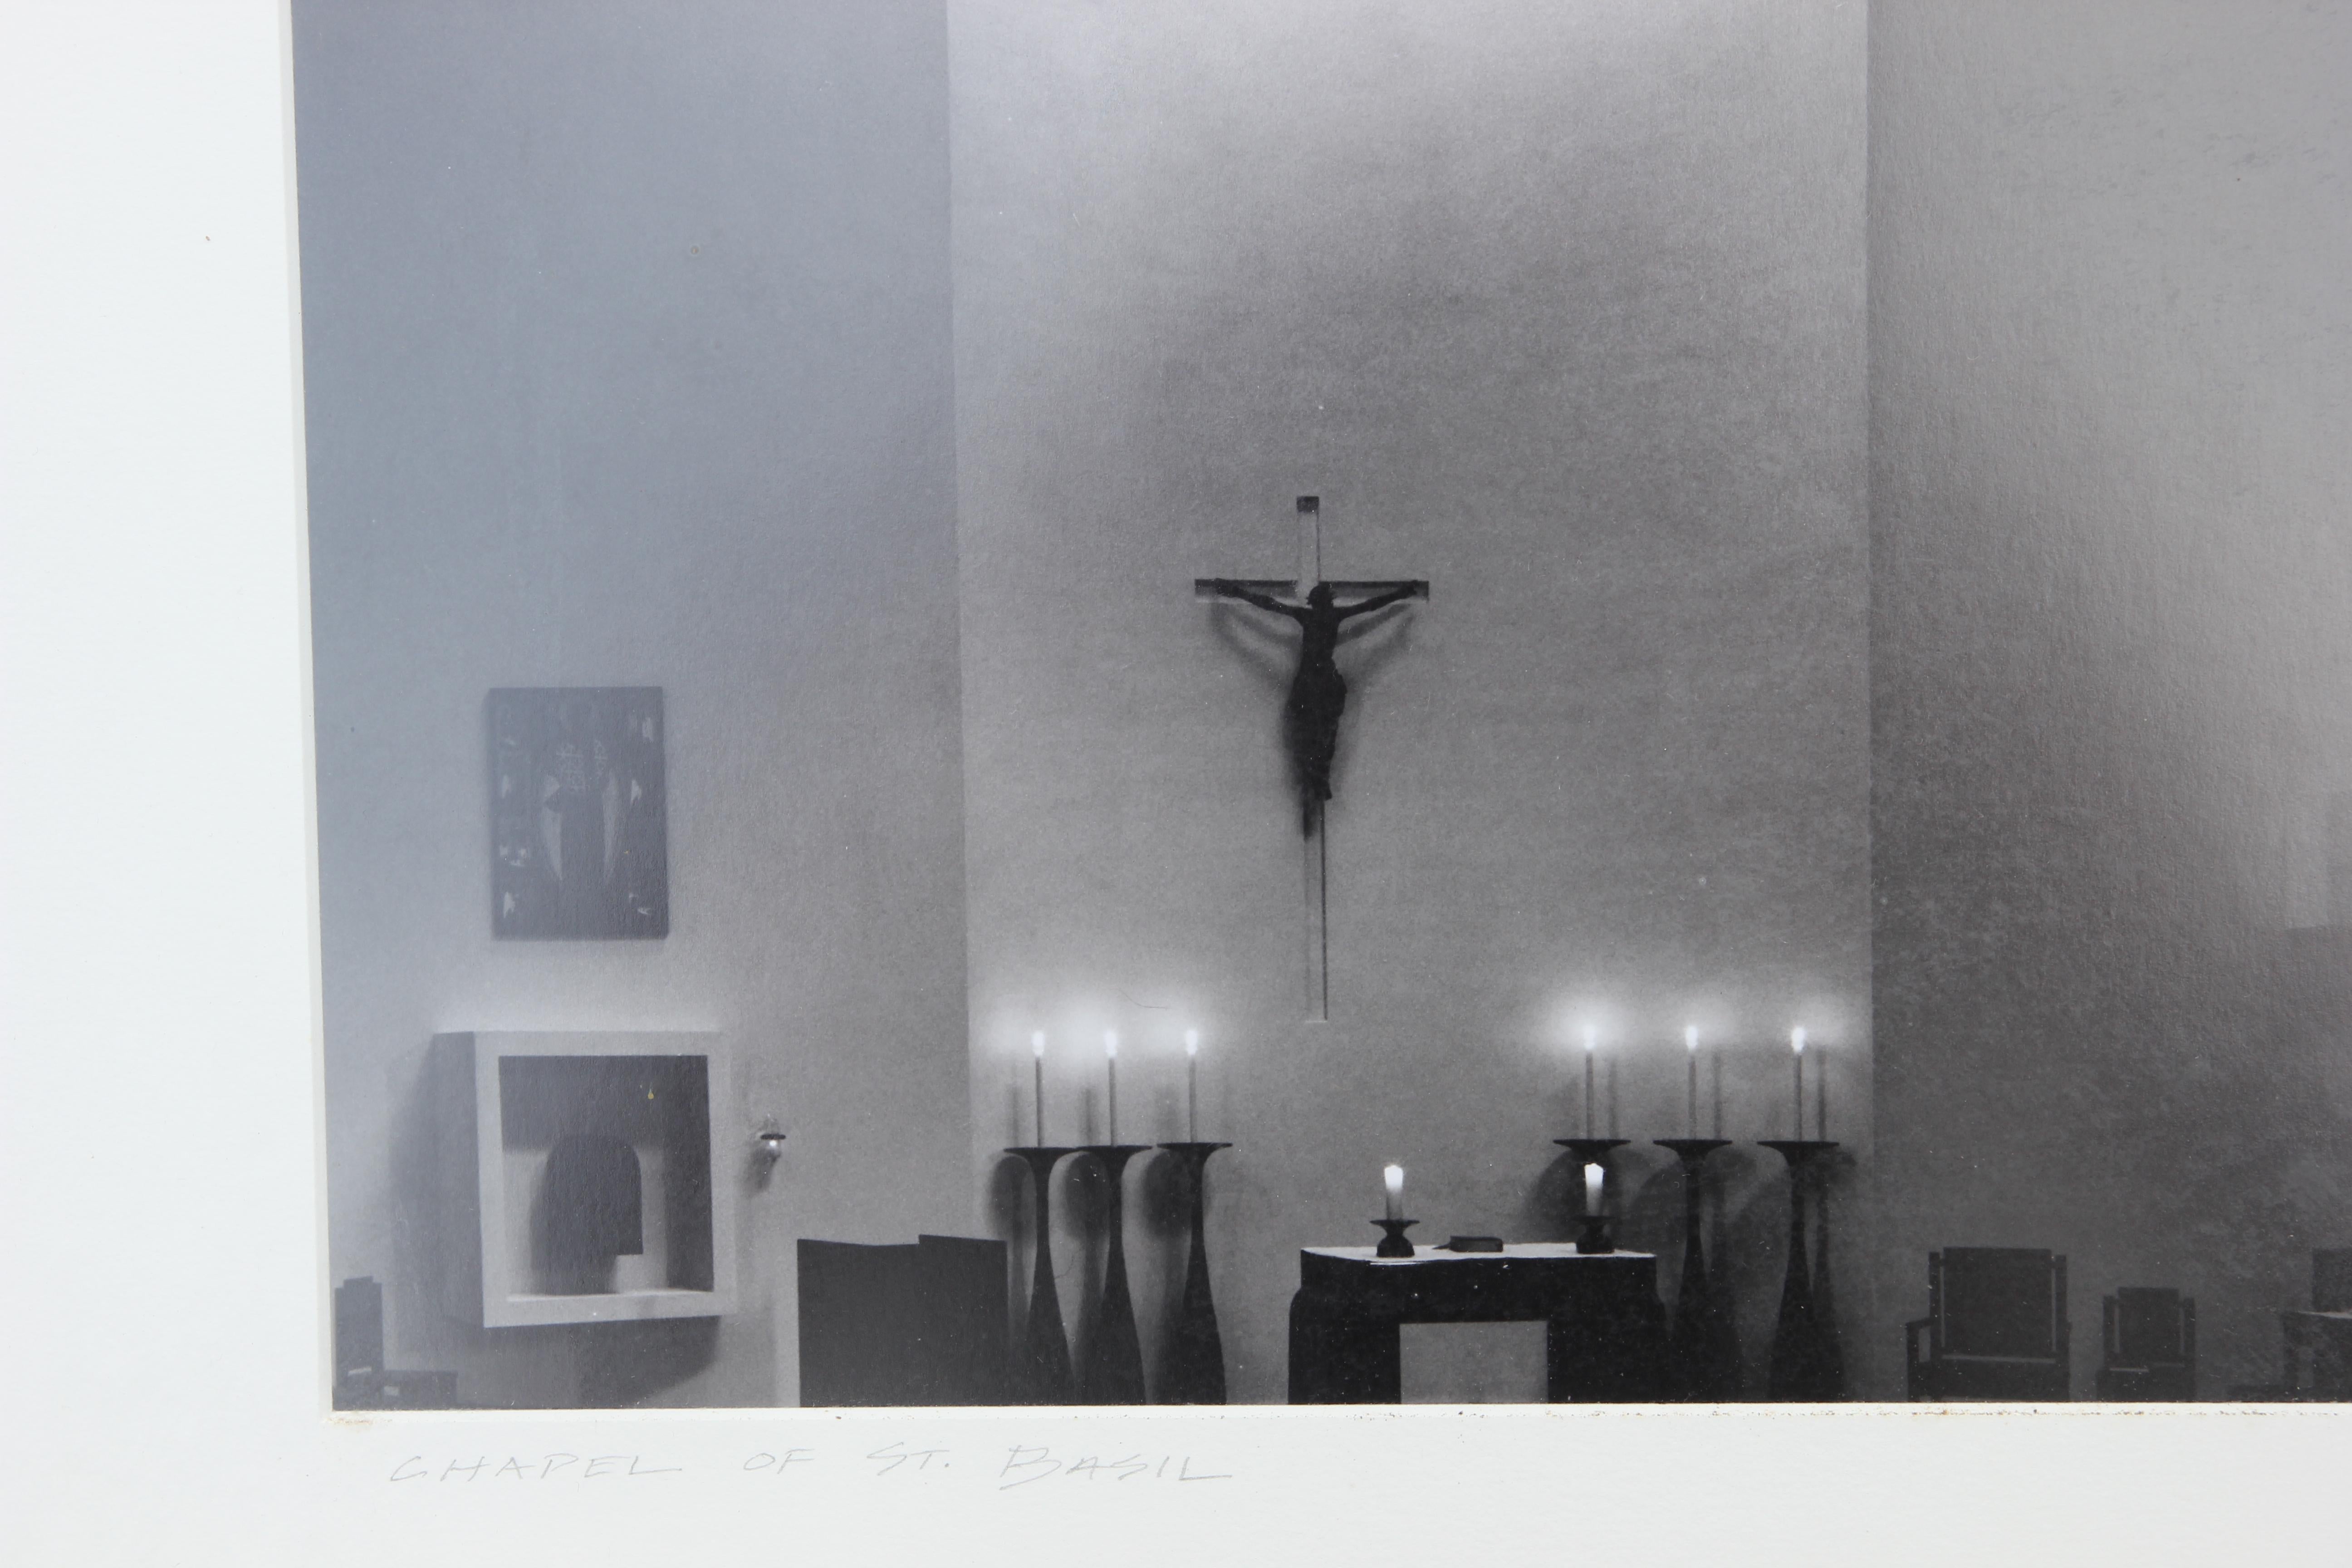 Schwarz-Weiß-Fotografie des Kirchenfensters und des Kruzifixes „Chapel of St. Basil“ (Naturalismus), Photograph, von Nash Baker